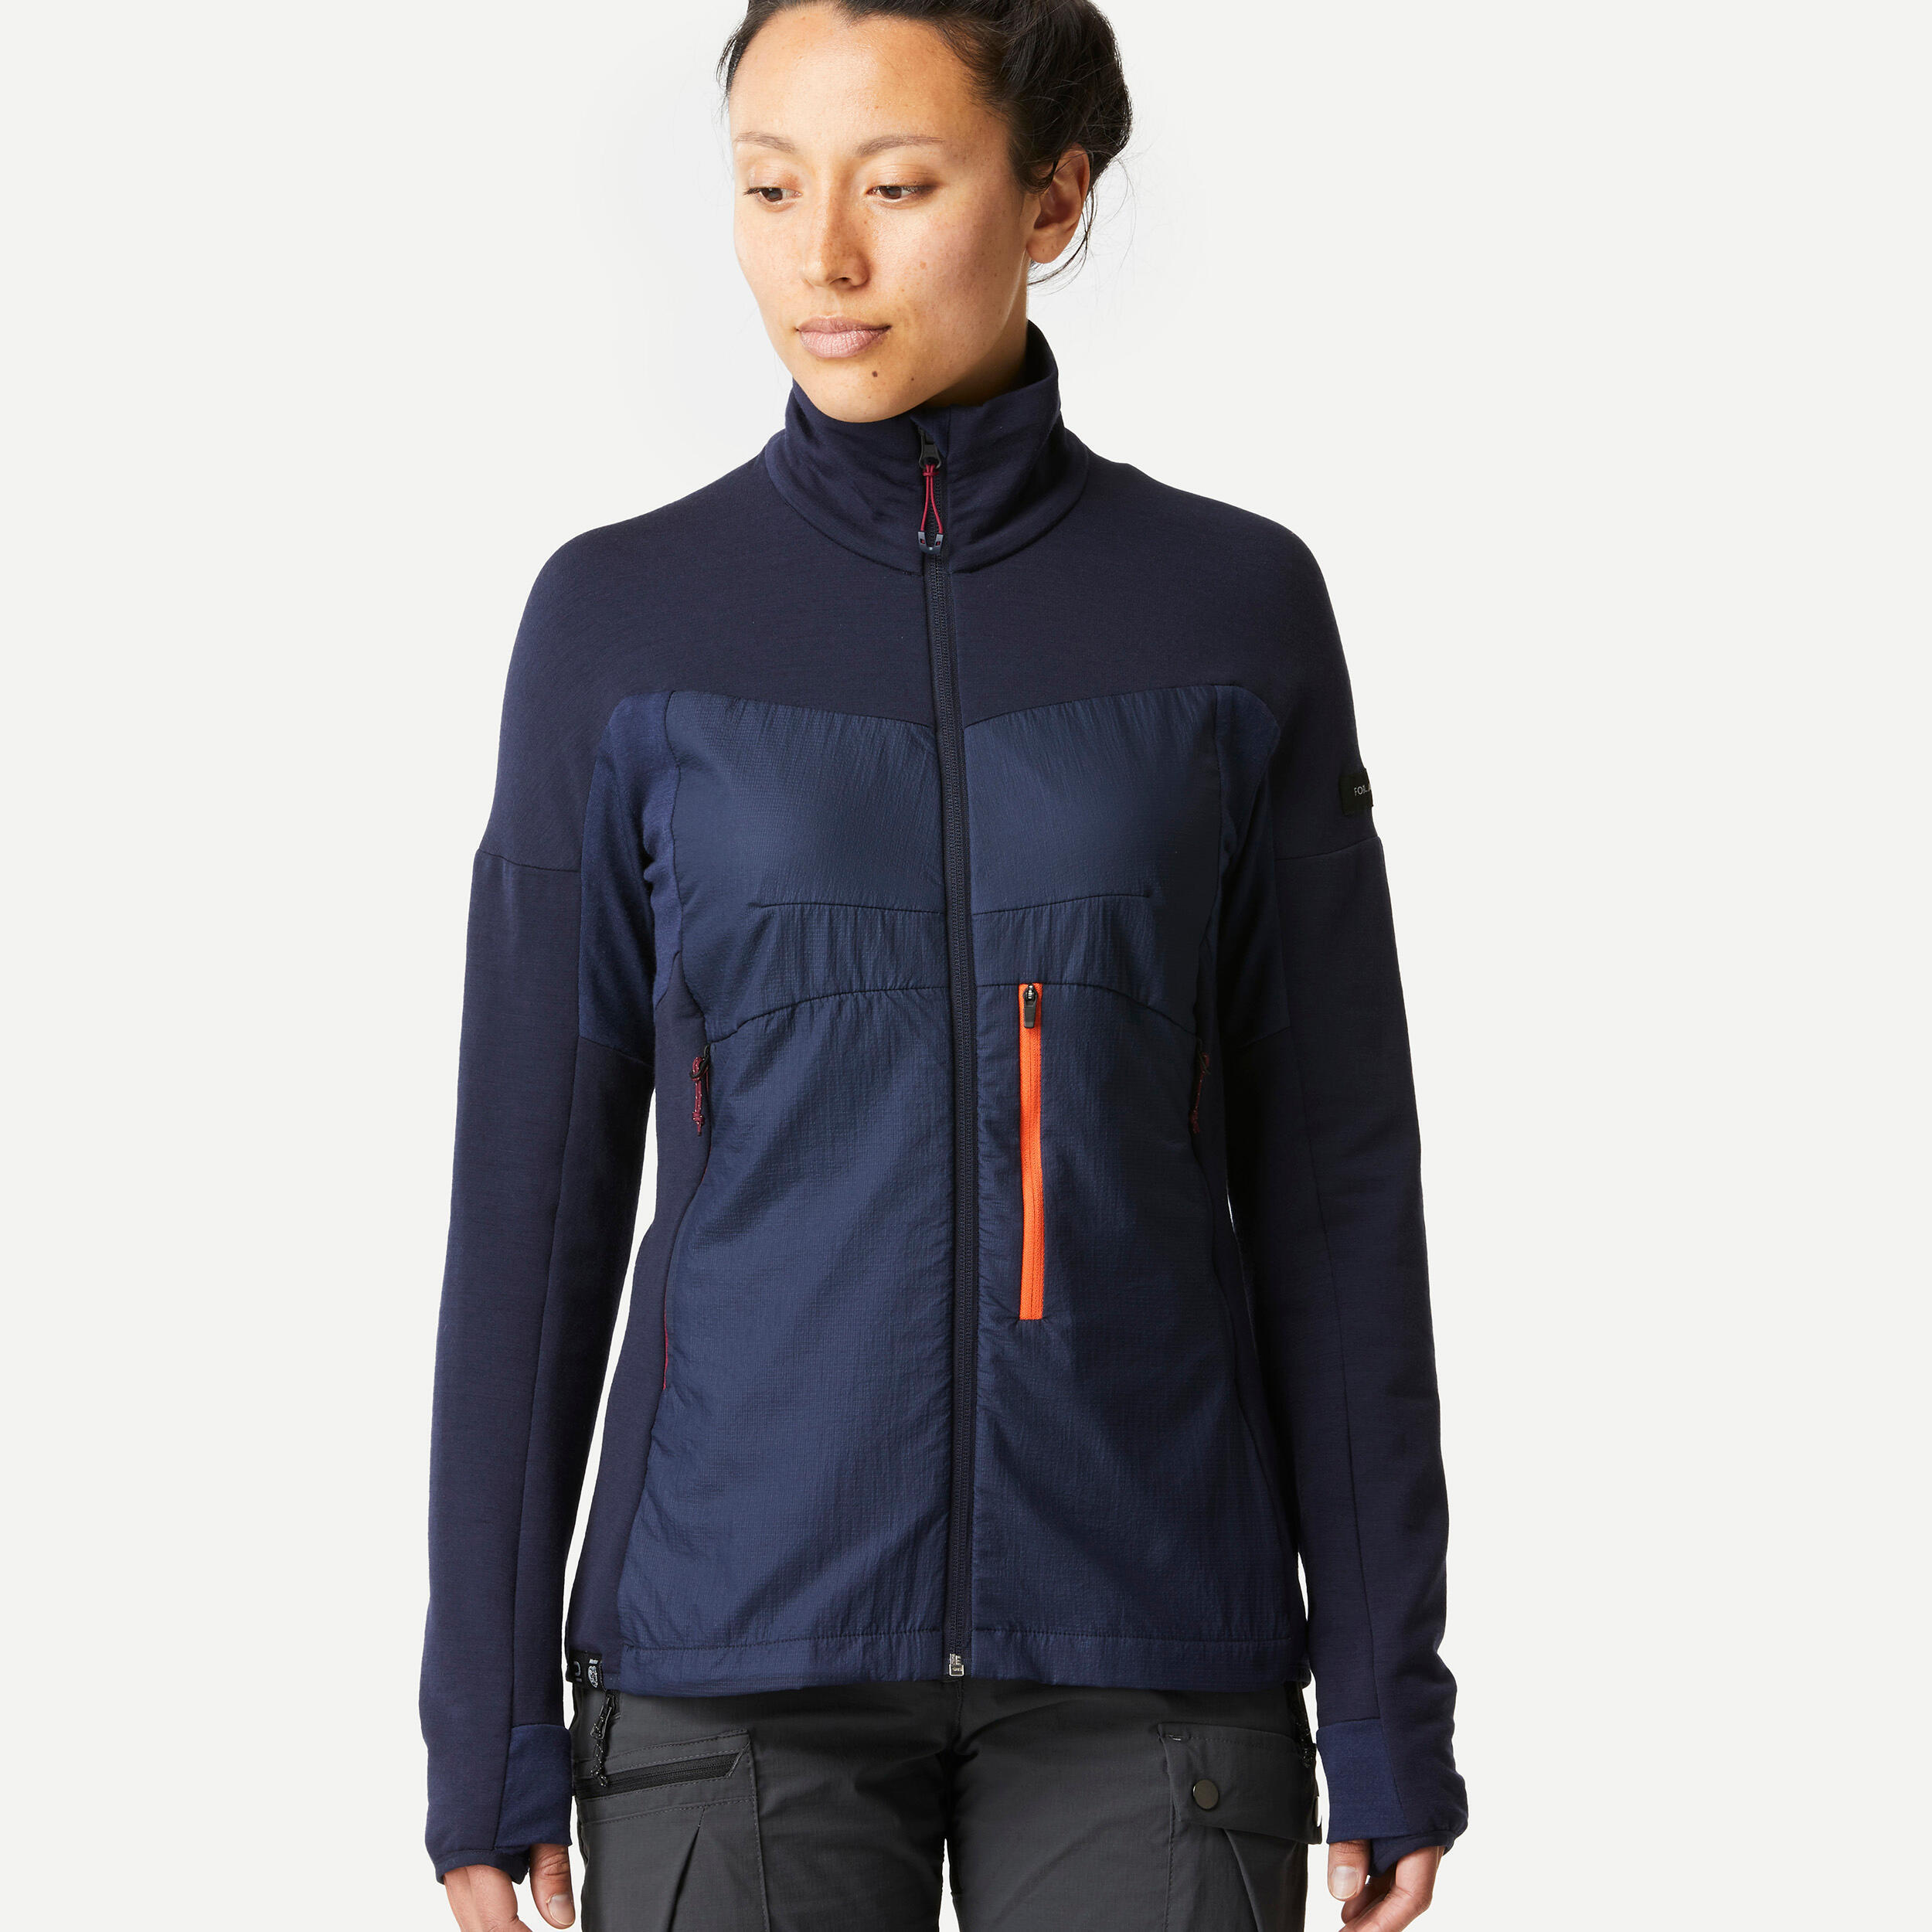 Women's Merino Wool Trekking Jacket Liner - MT900 5/8